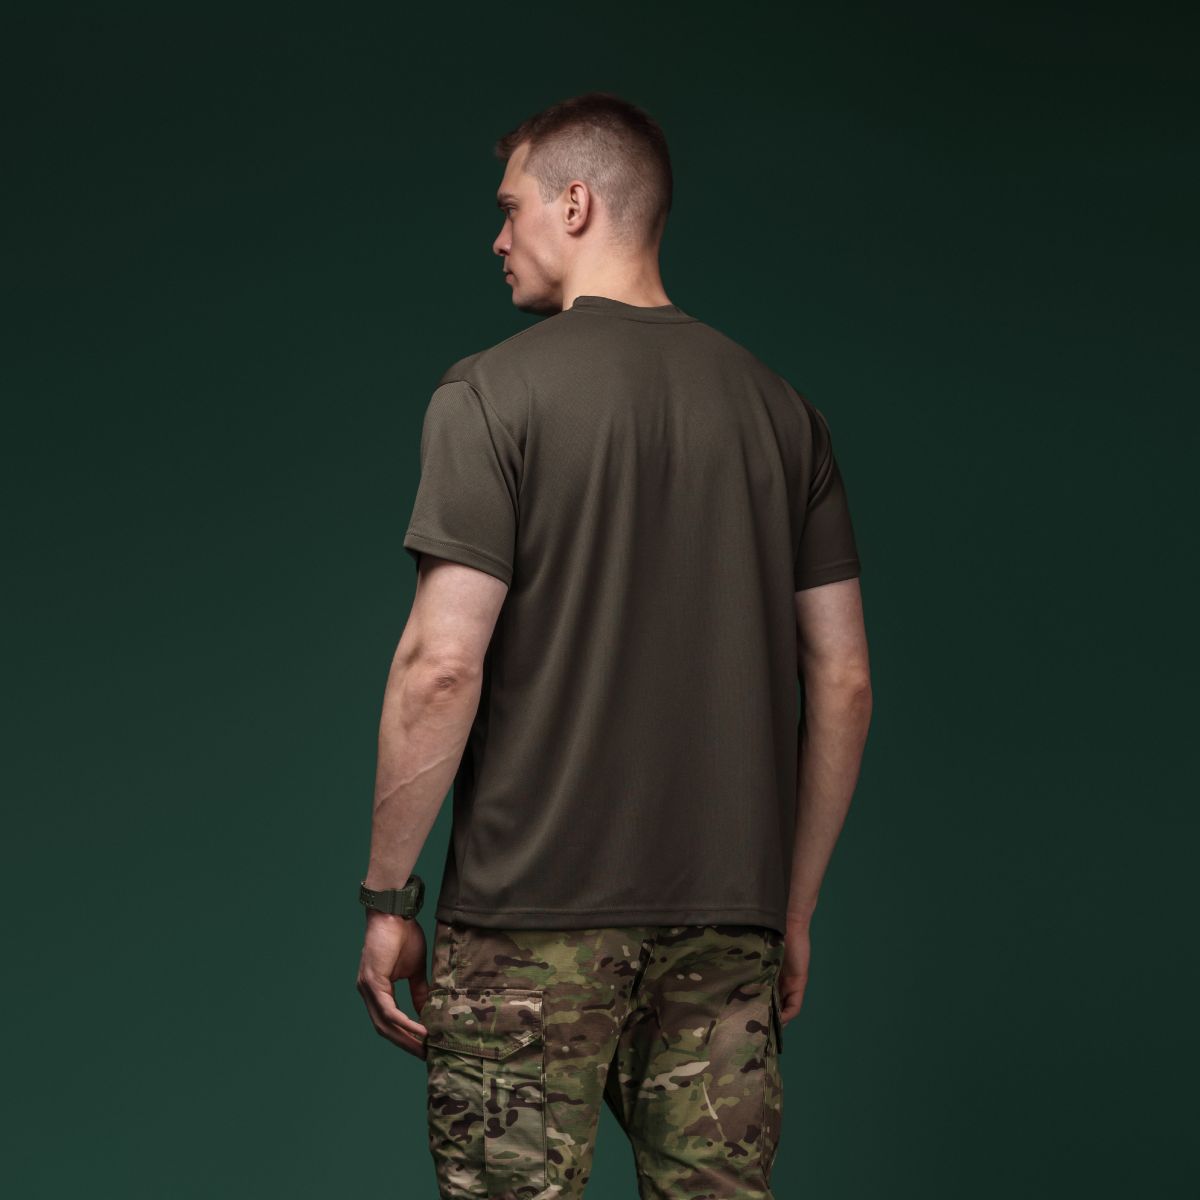 Комплект футболок (3 шт.) AIR Coolmax. Легкие и хорошо отводят влагу. Ranger green 4